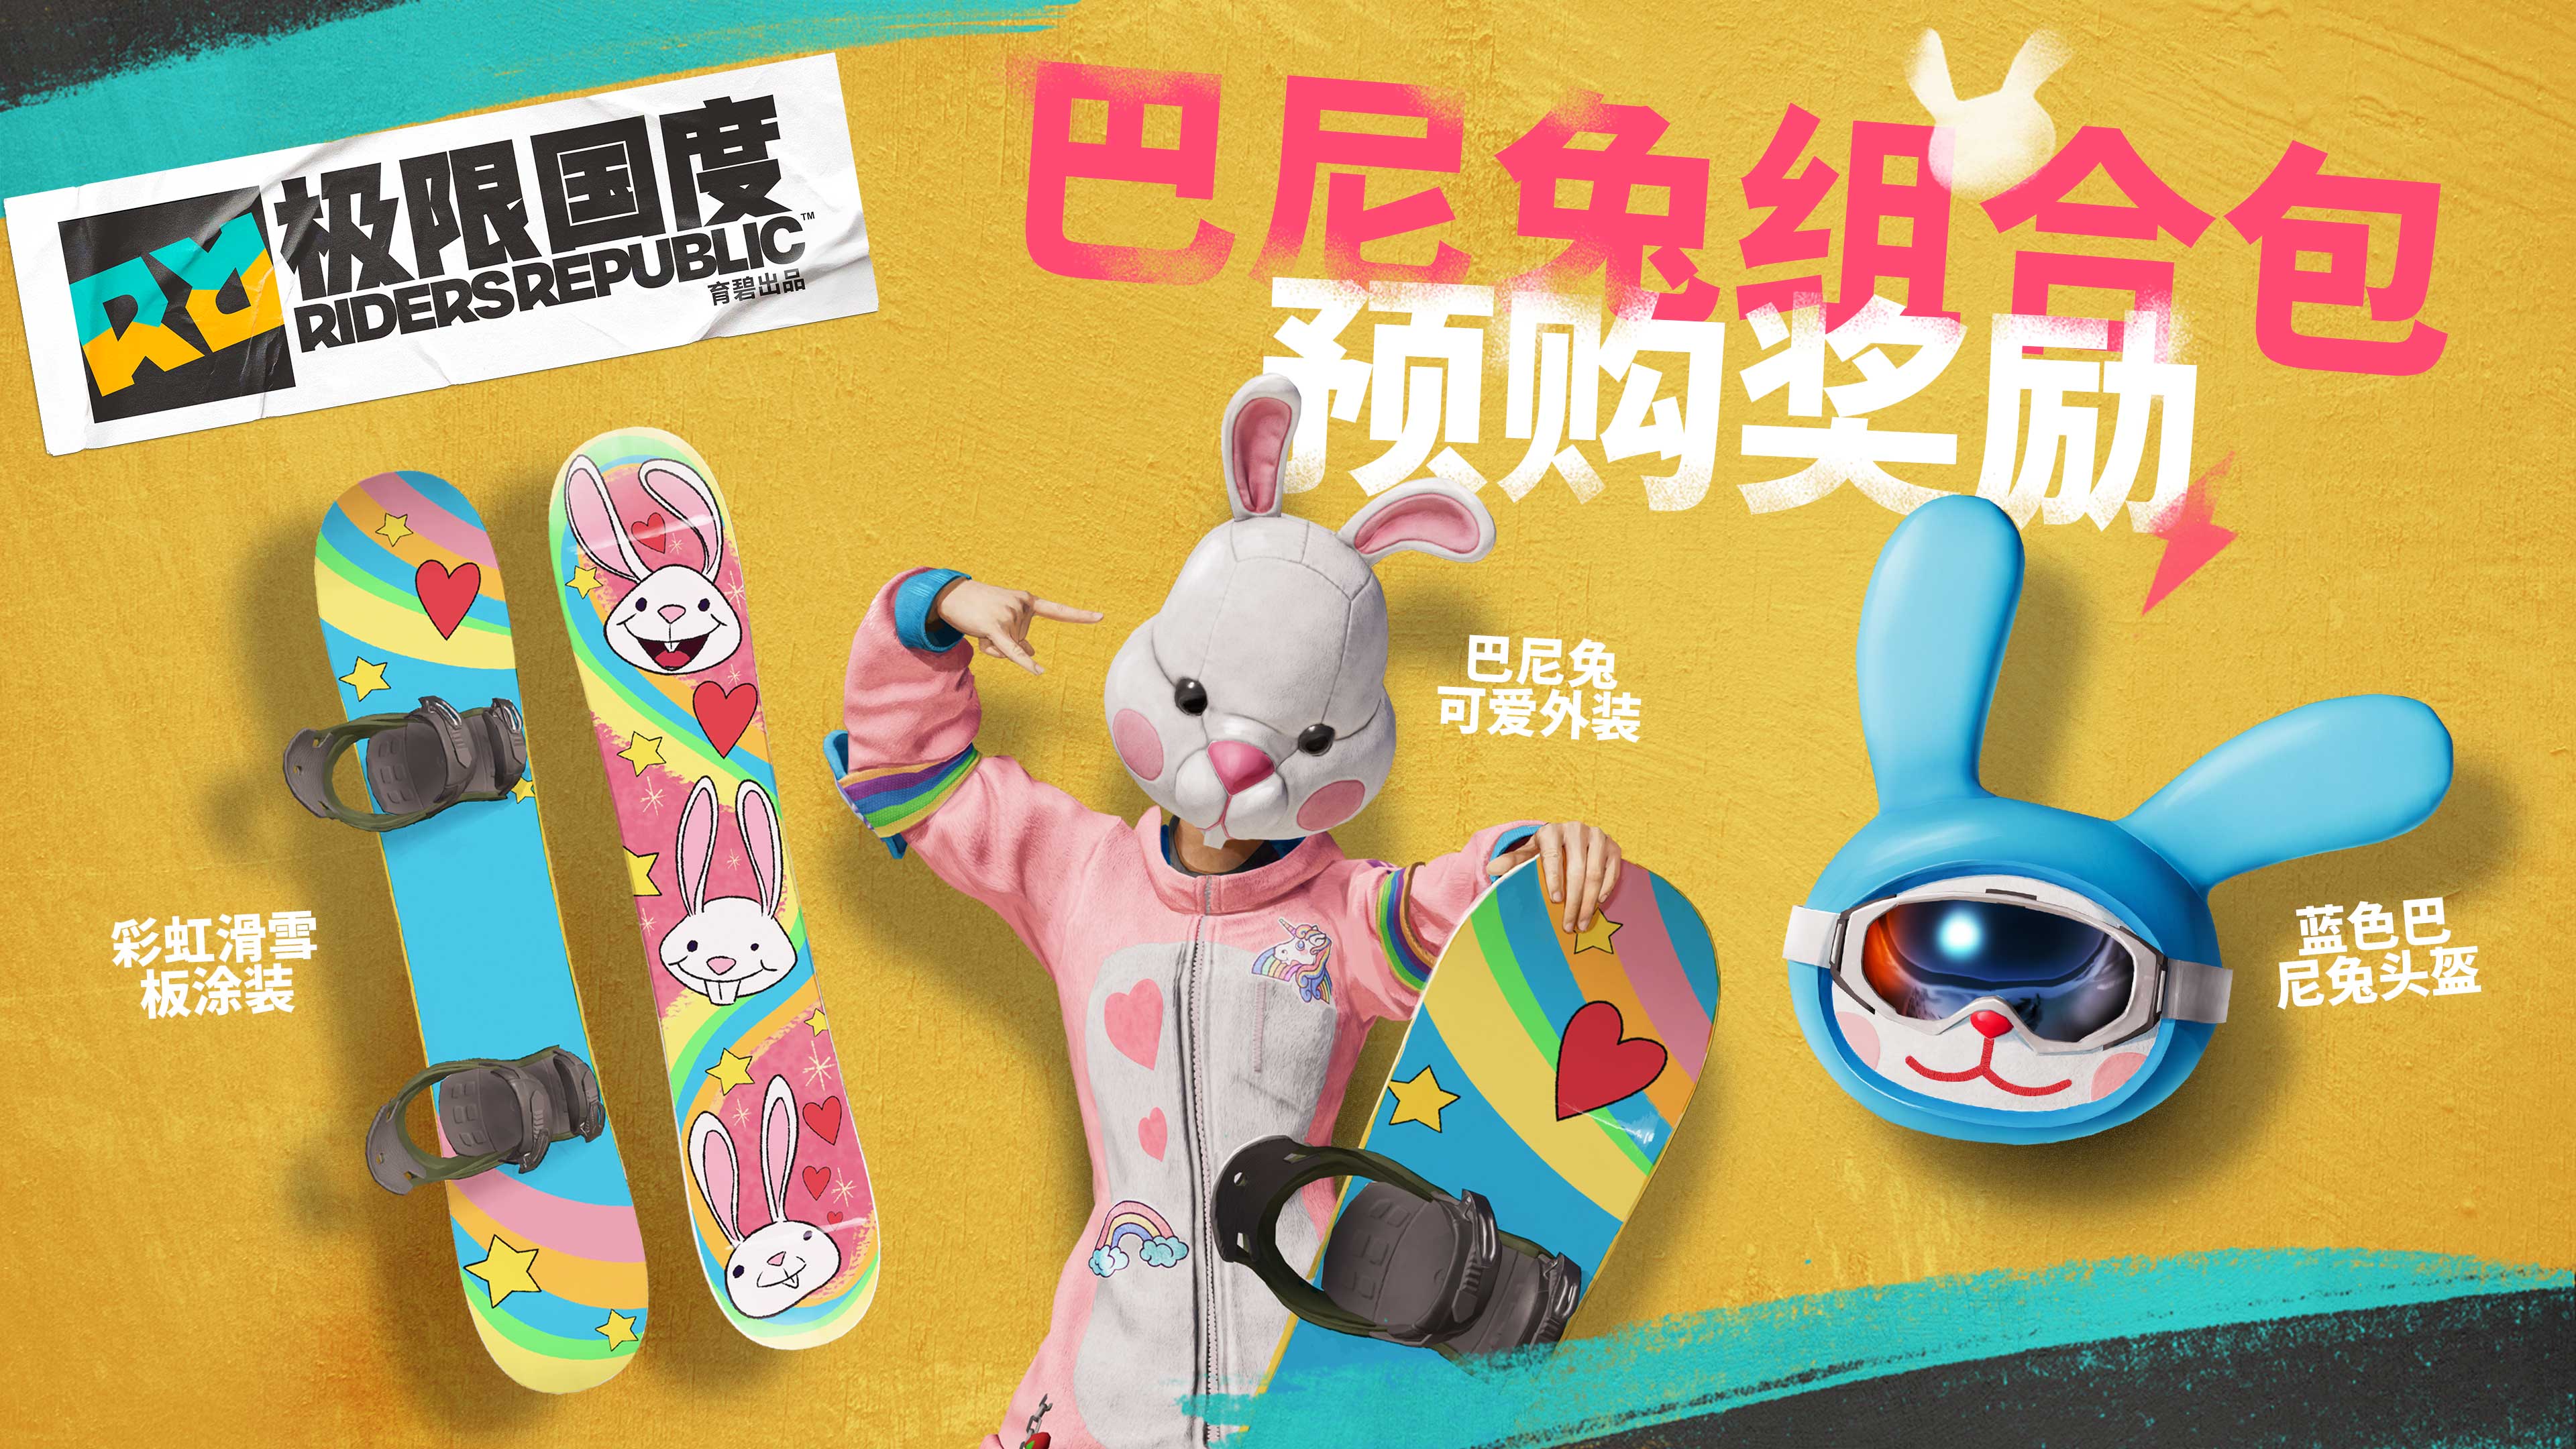 《極限共和國》預購特典巴尼兔組合包演示 “猛男”配色